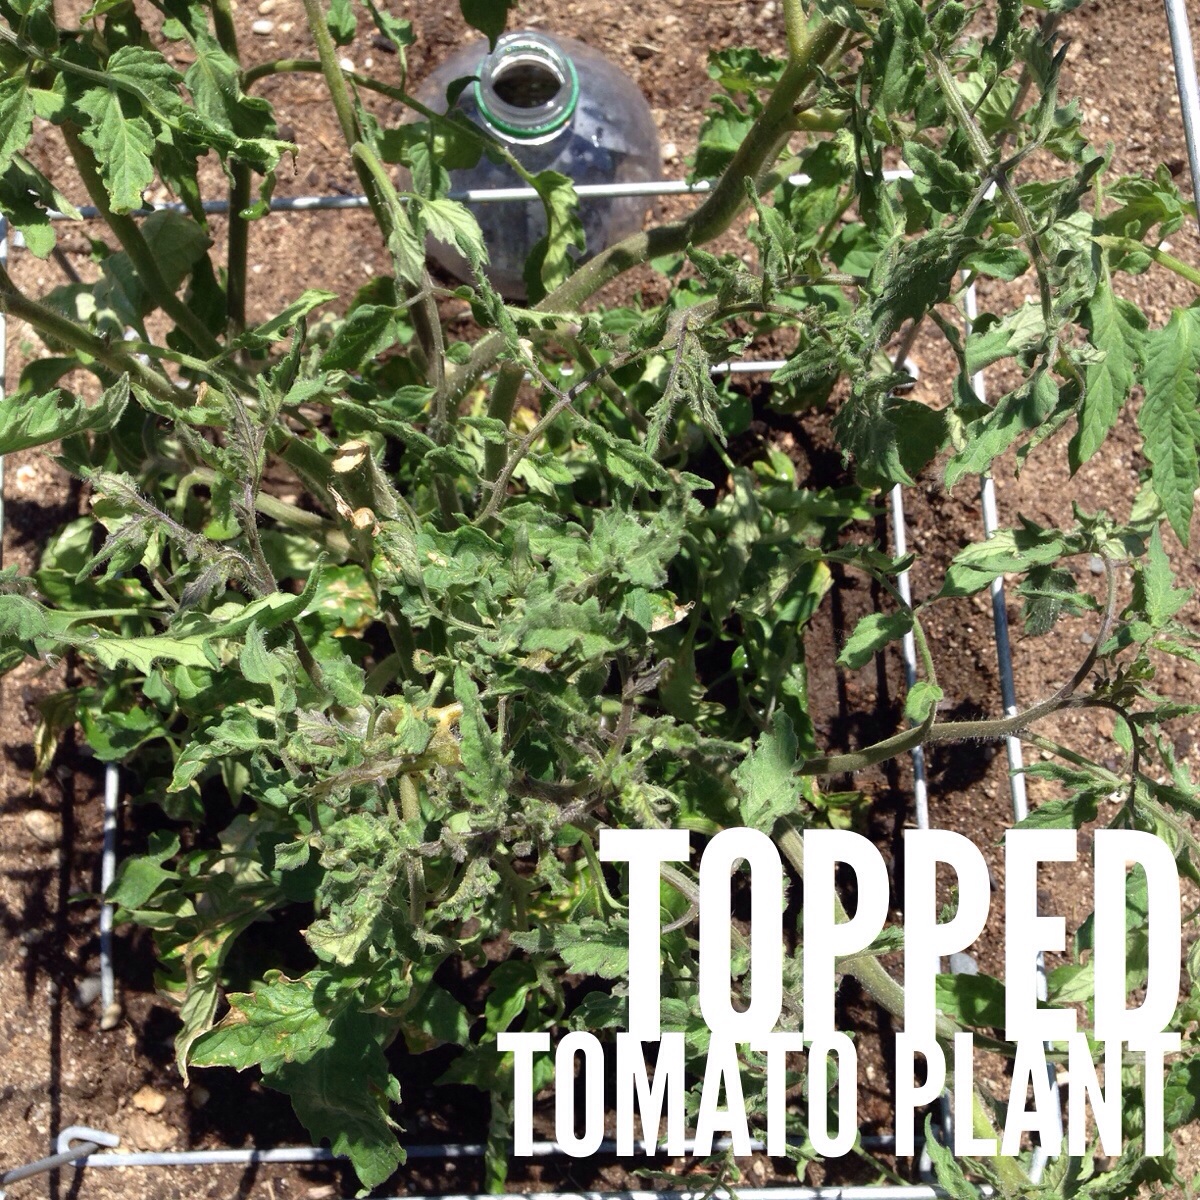 Topped tomato plant